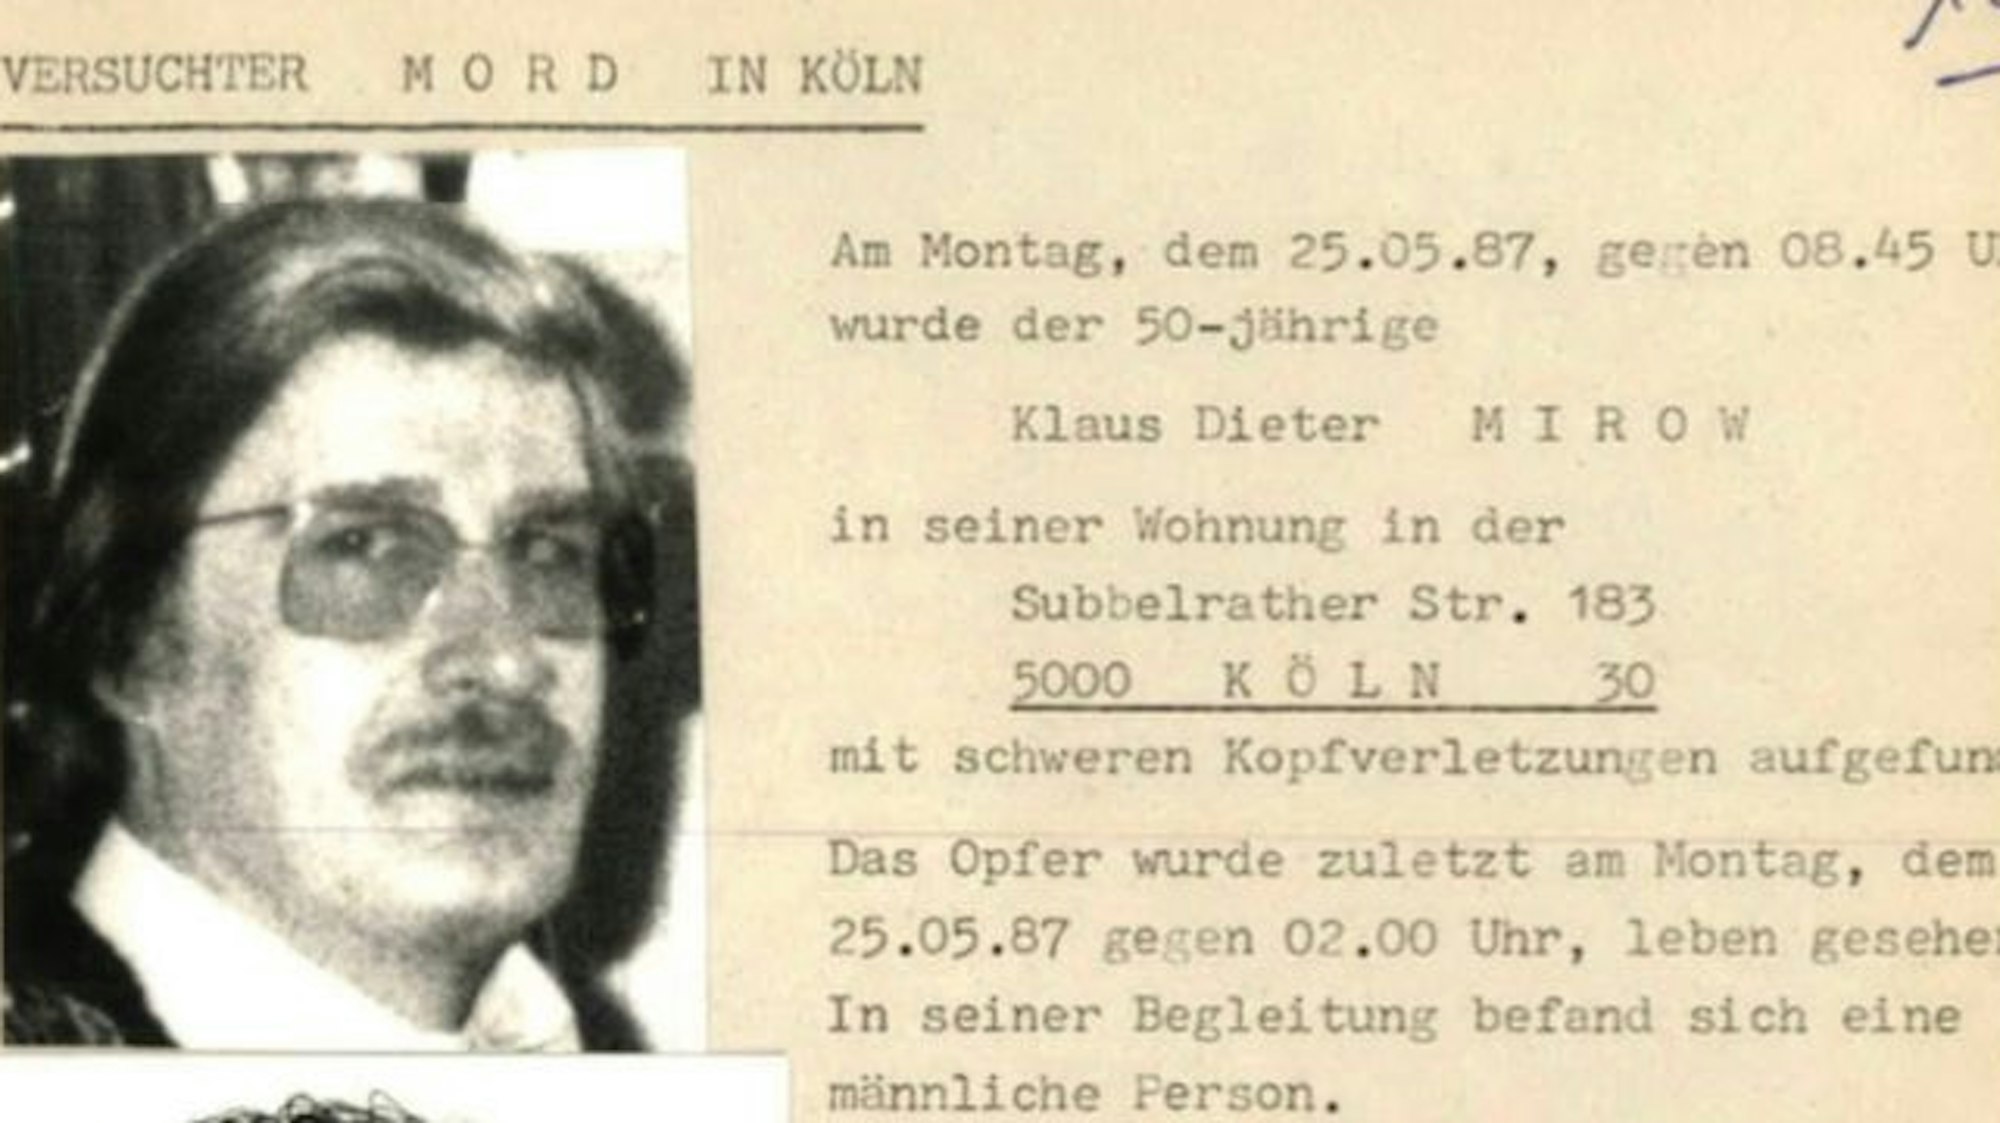 Fahndungsplakat nach dem versuchten Raubmord 1987 in Köln-Ehrenfeld, Links das Bild des mutmaßlichen Täters, rechts Schreibmaschinentext auf gelblichem Papier